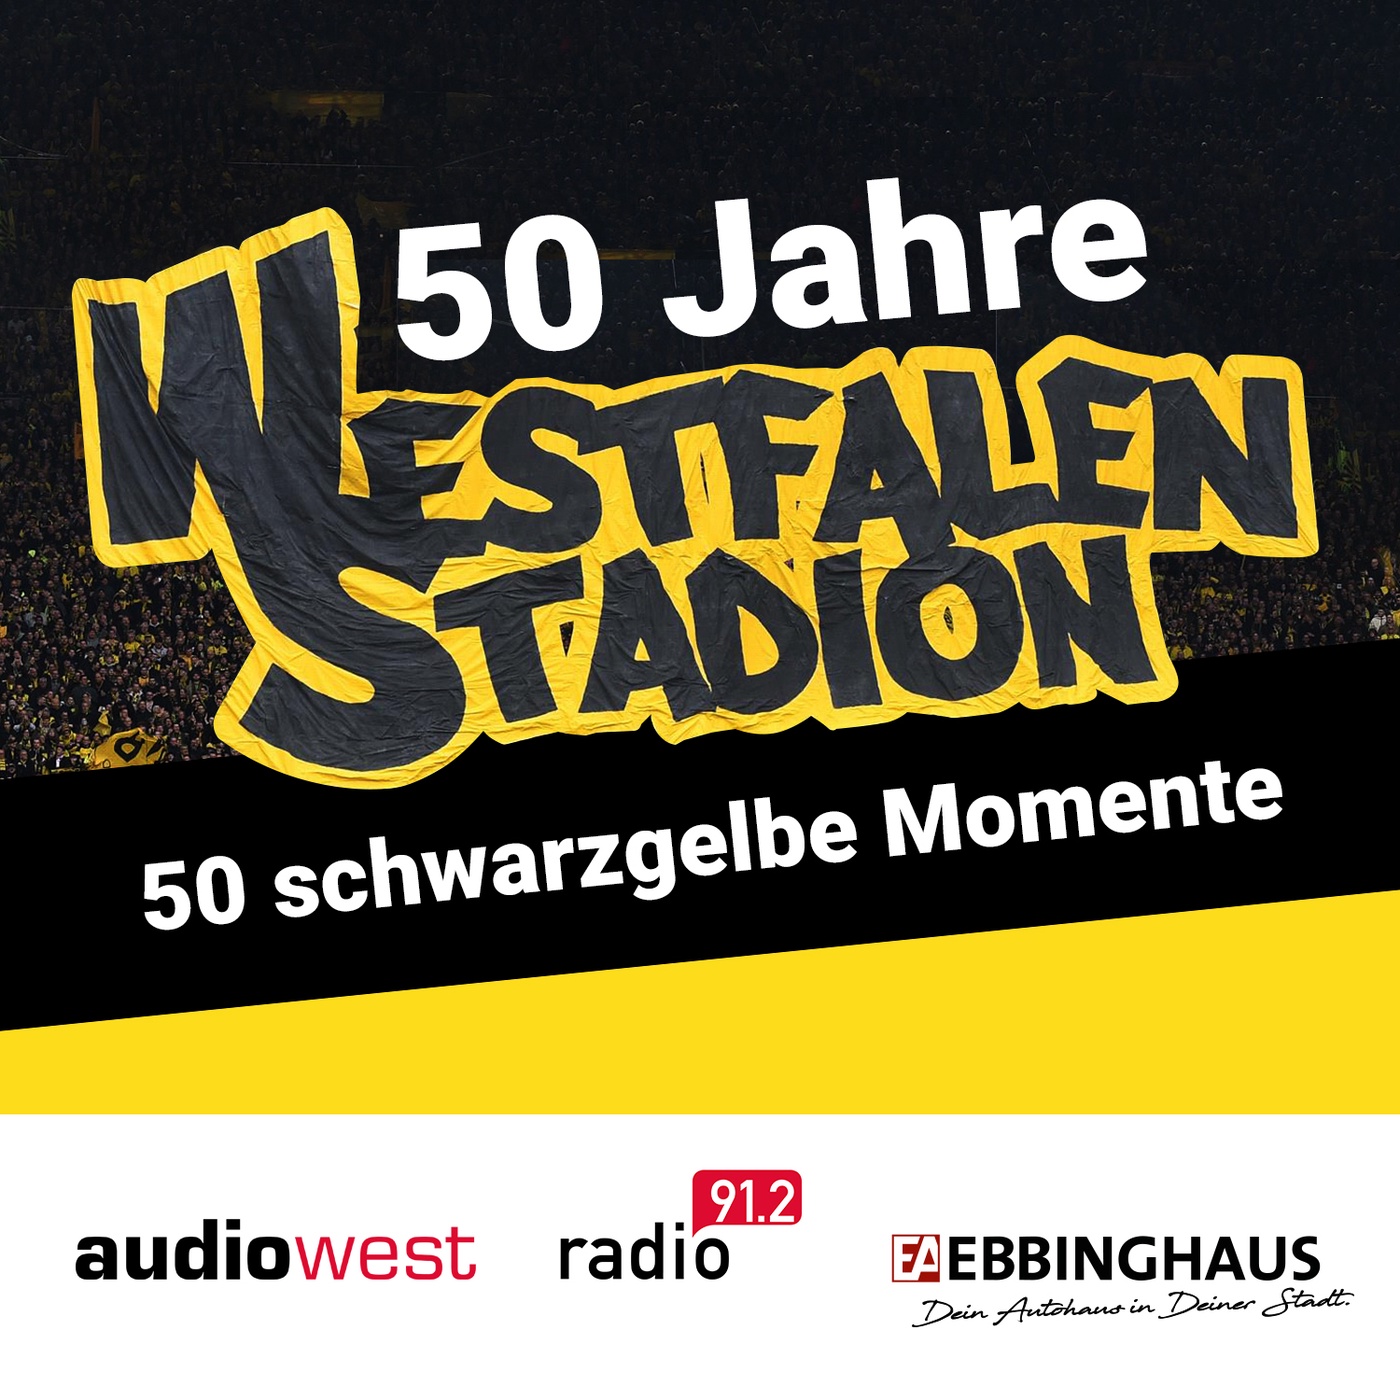 50 Jahre Westfalenstadion - 50 schwarzgelbe Momente